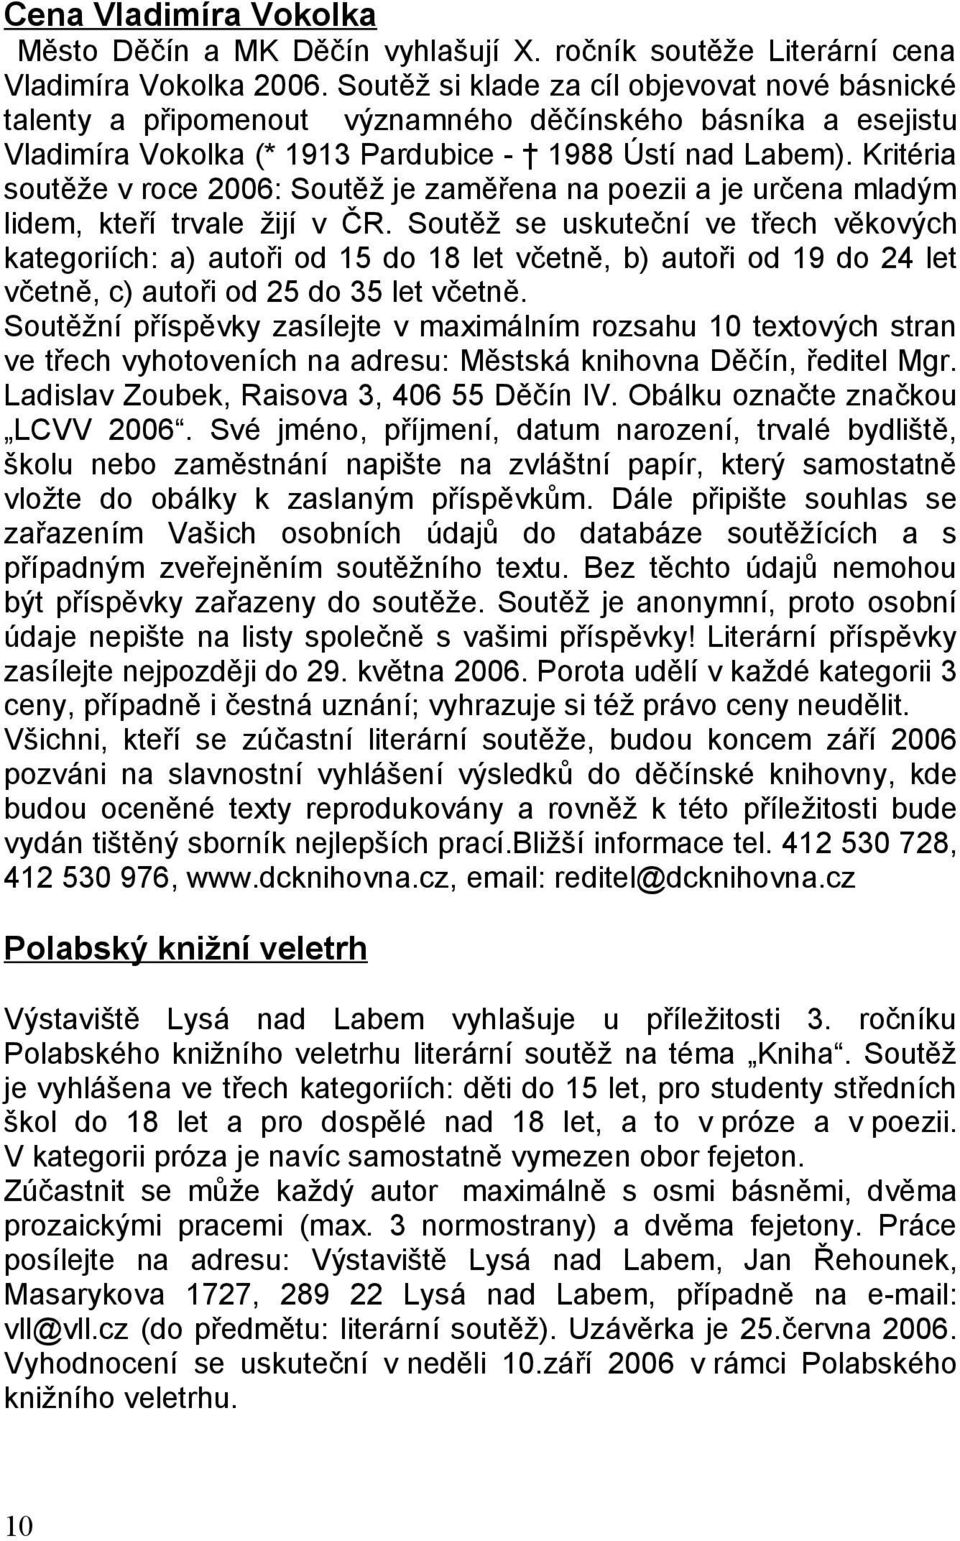 Kritéria soutěže v roce 2006: Soutěž je zaměřena na poezii a je určena mladým lidem, kteří trvale žijí v ČR.